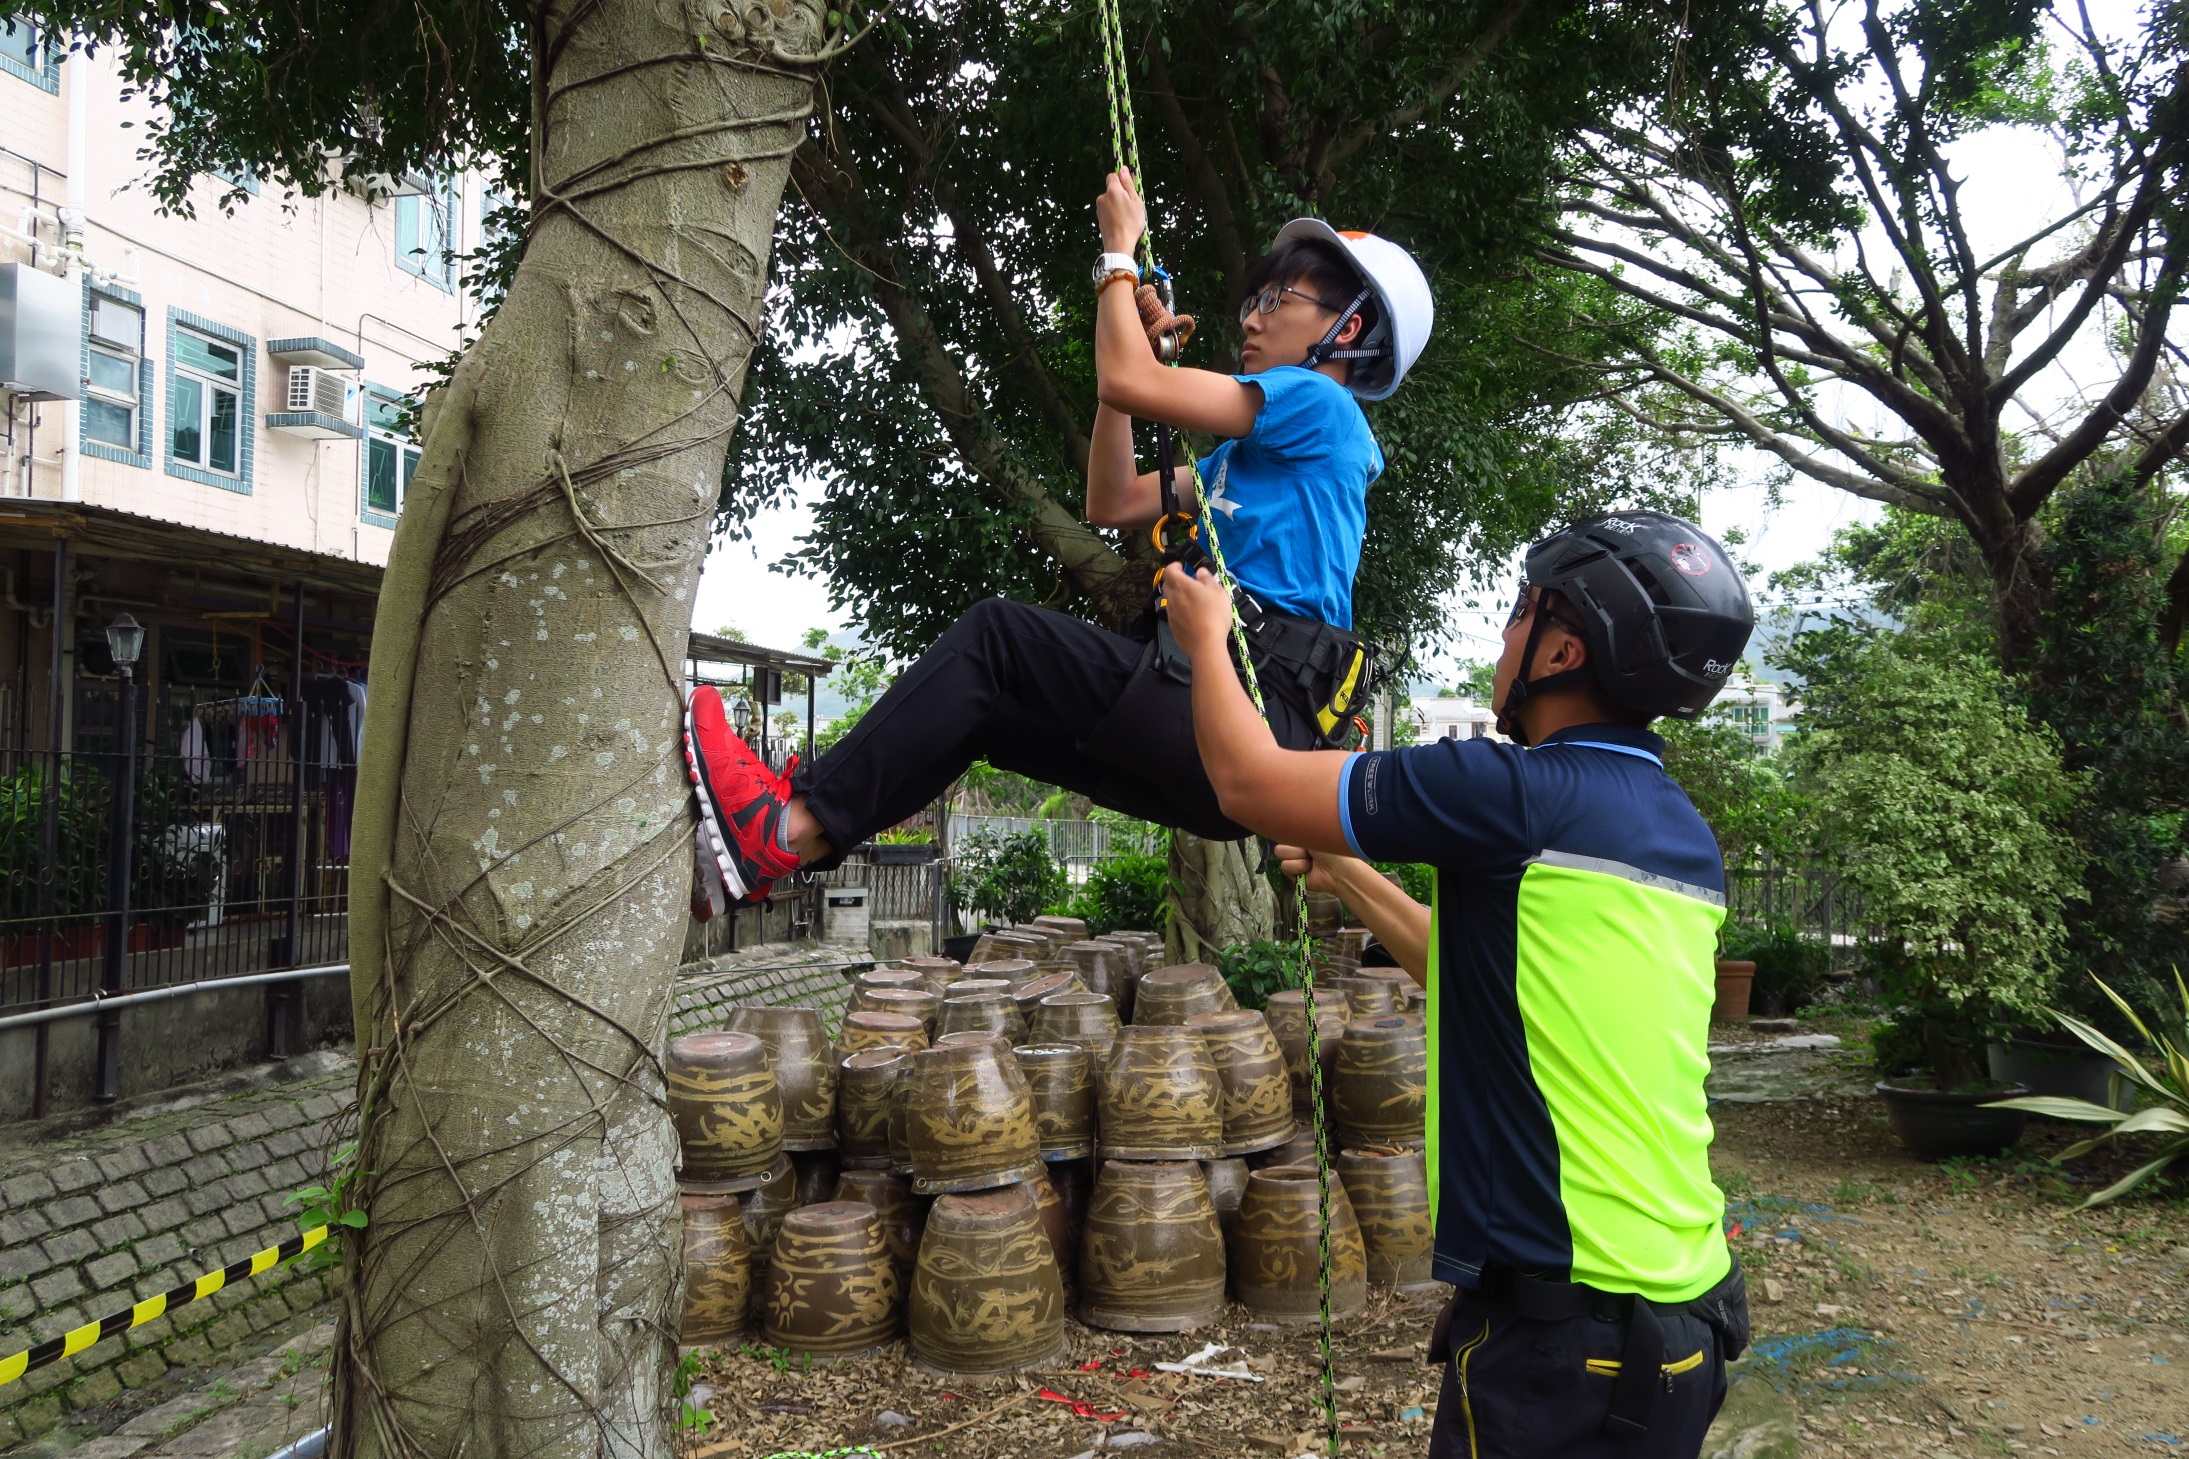 在攀树师指导下 ，同学亲身体验树木攀爬的乐趣。